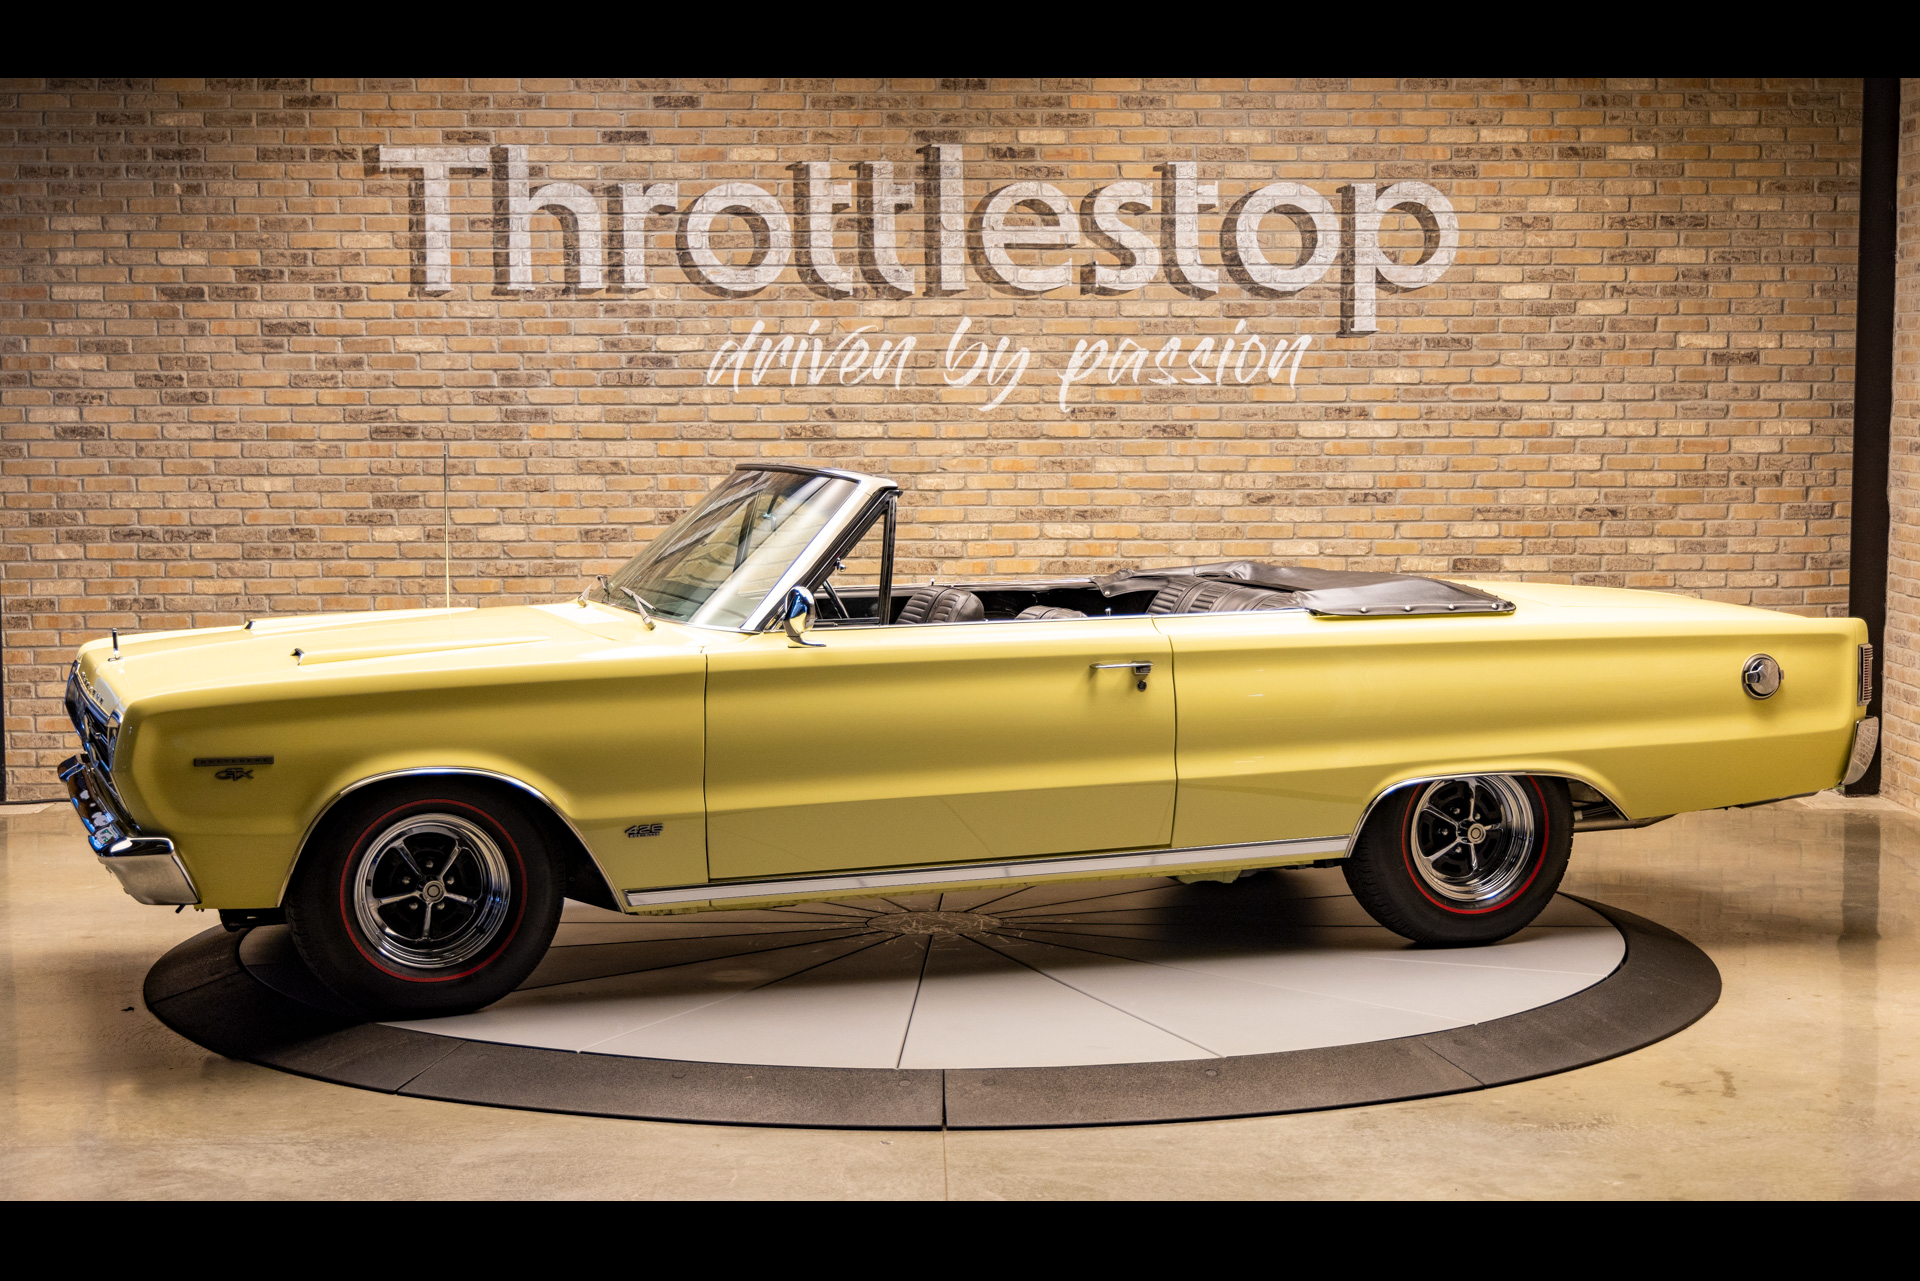 1966 Plymouth Belvedere II, Throttlestop